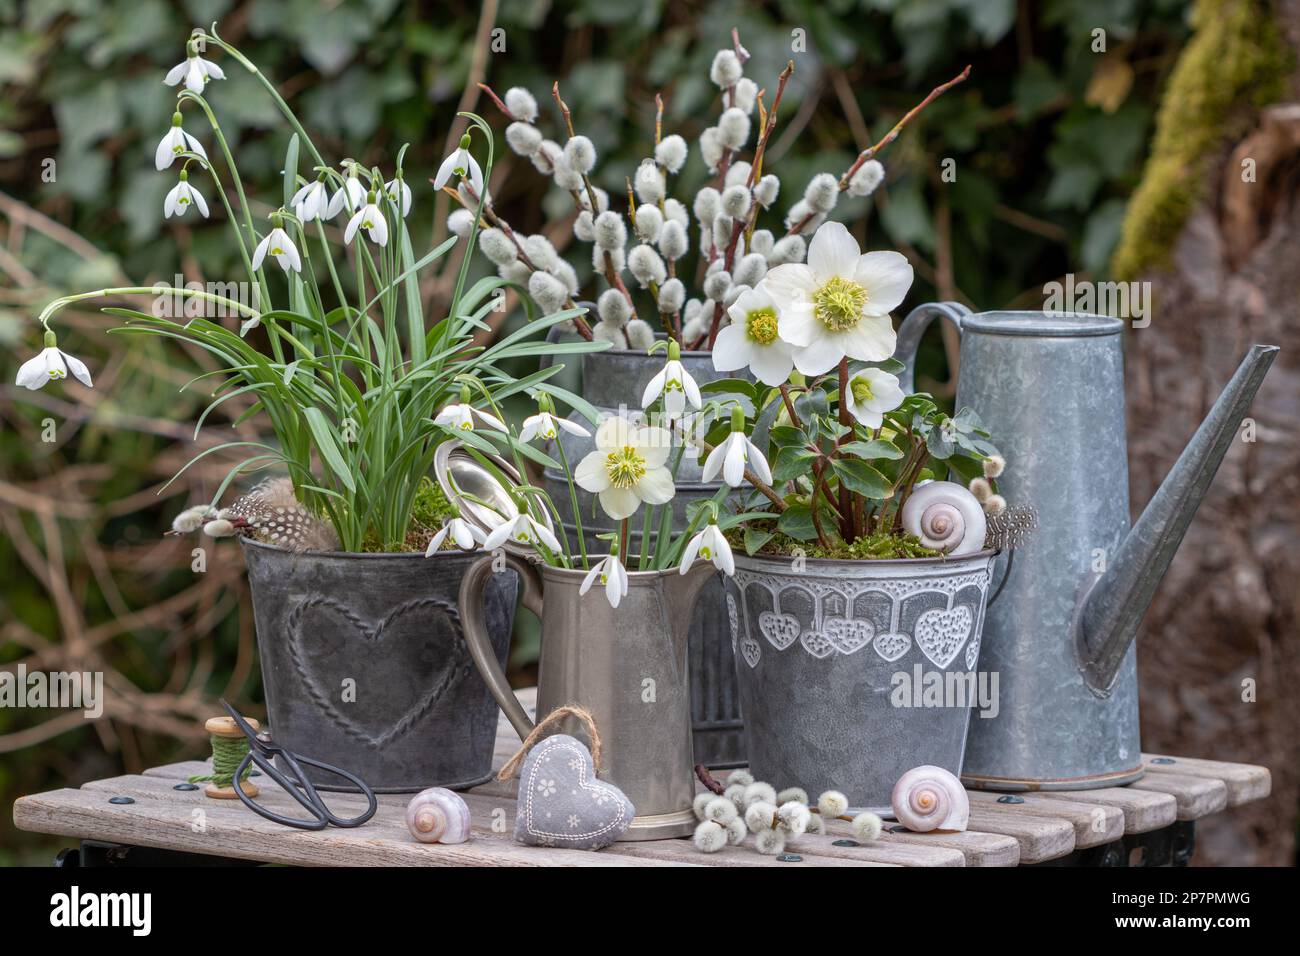 garden arrangement with helleborus niger, snowdrops  and willow catkins in zinc pots Stock Photo